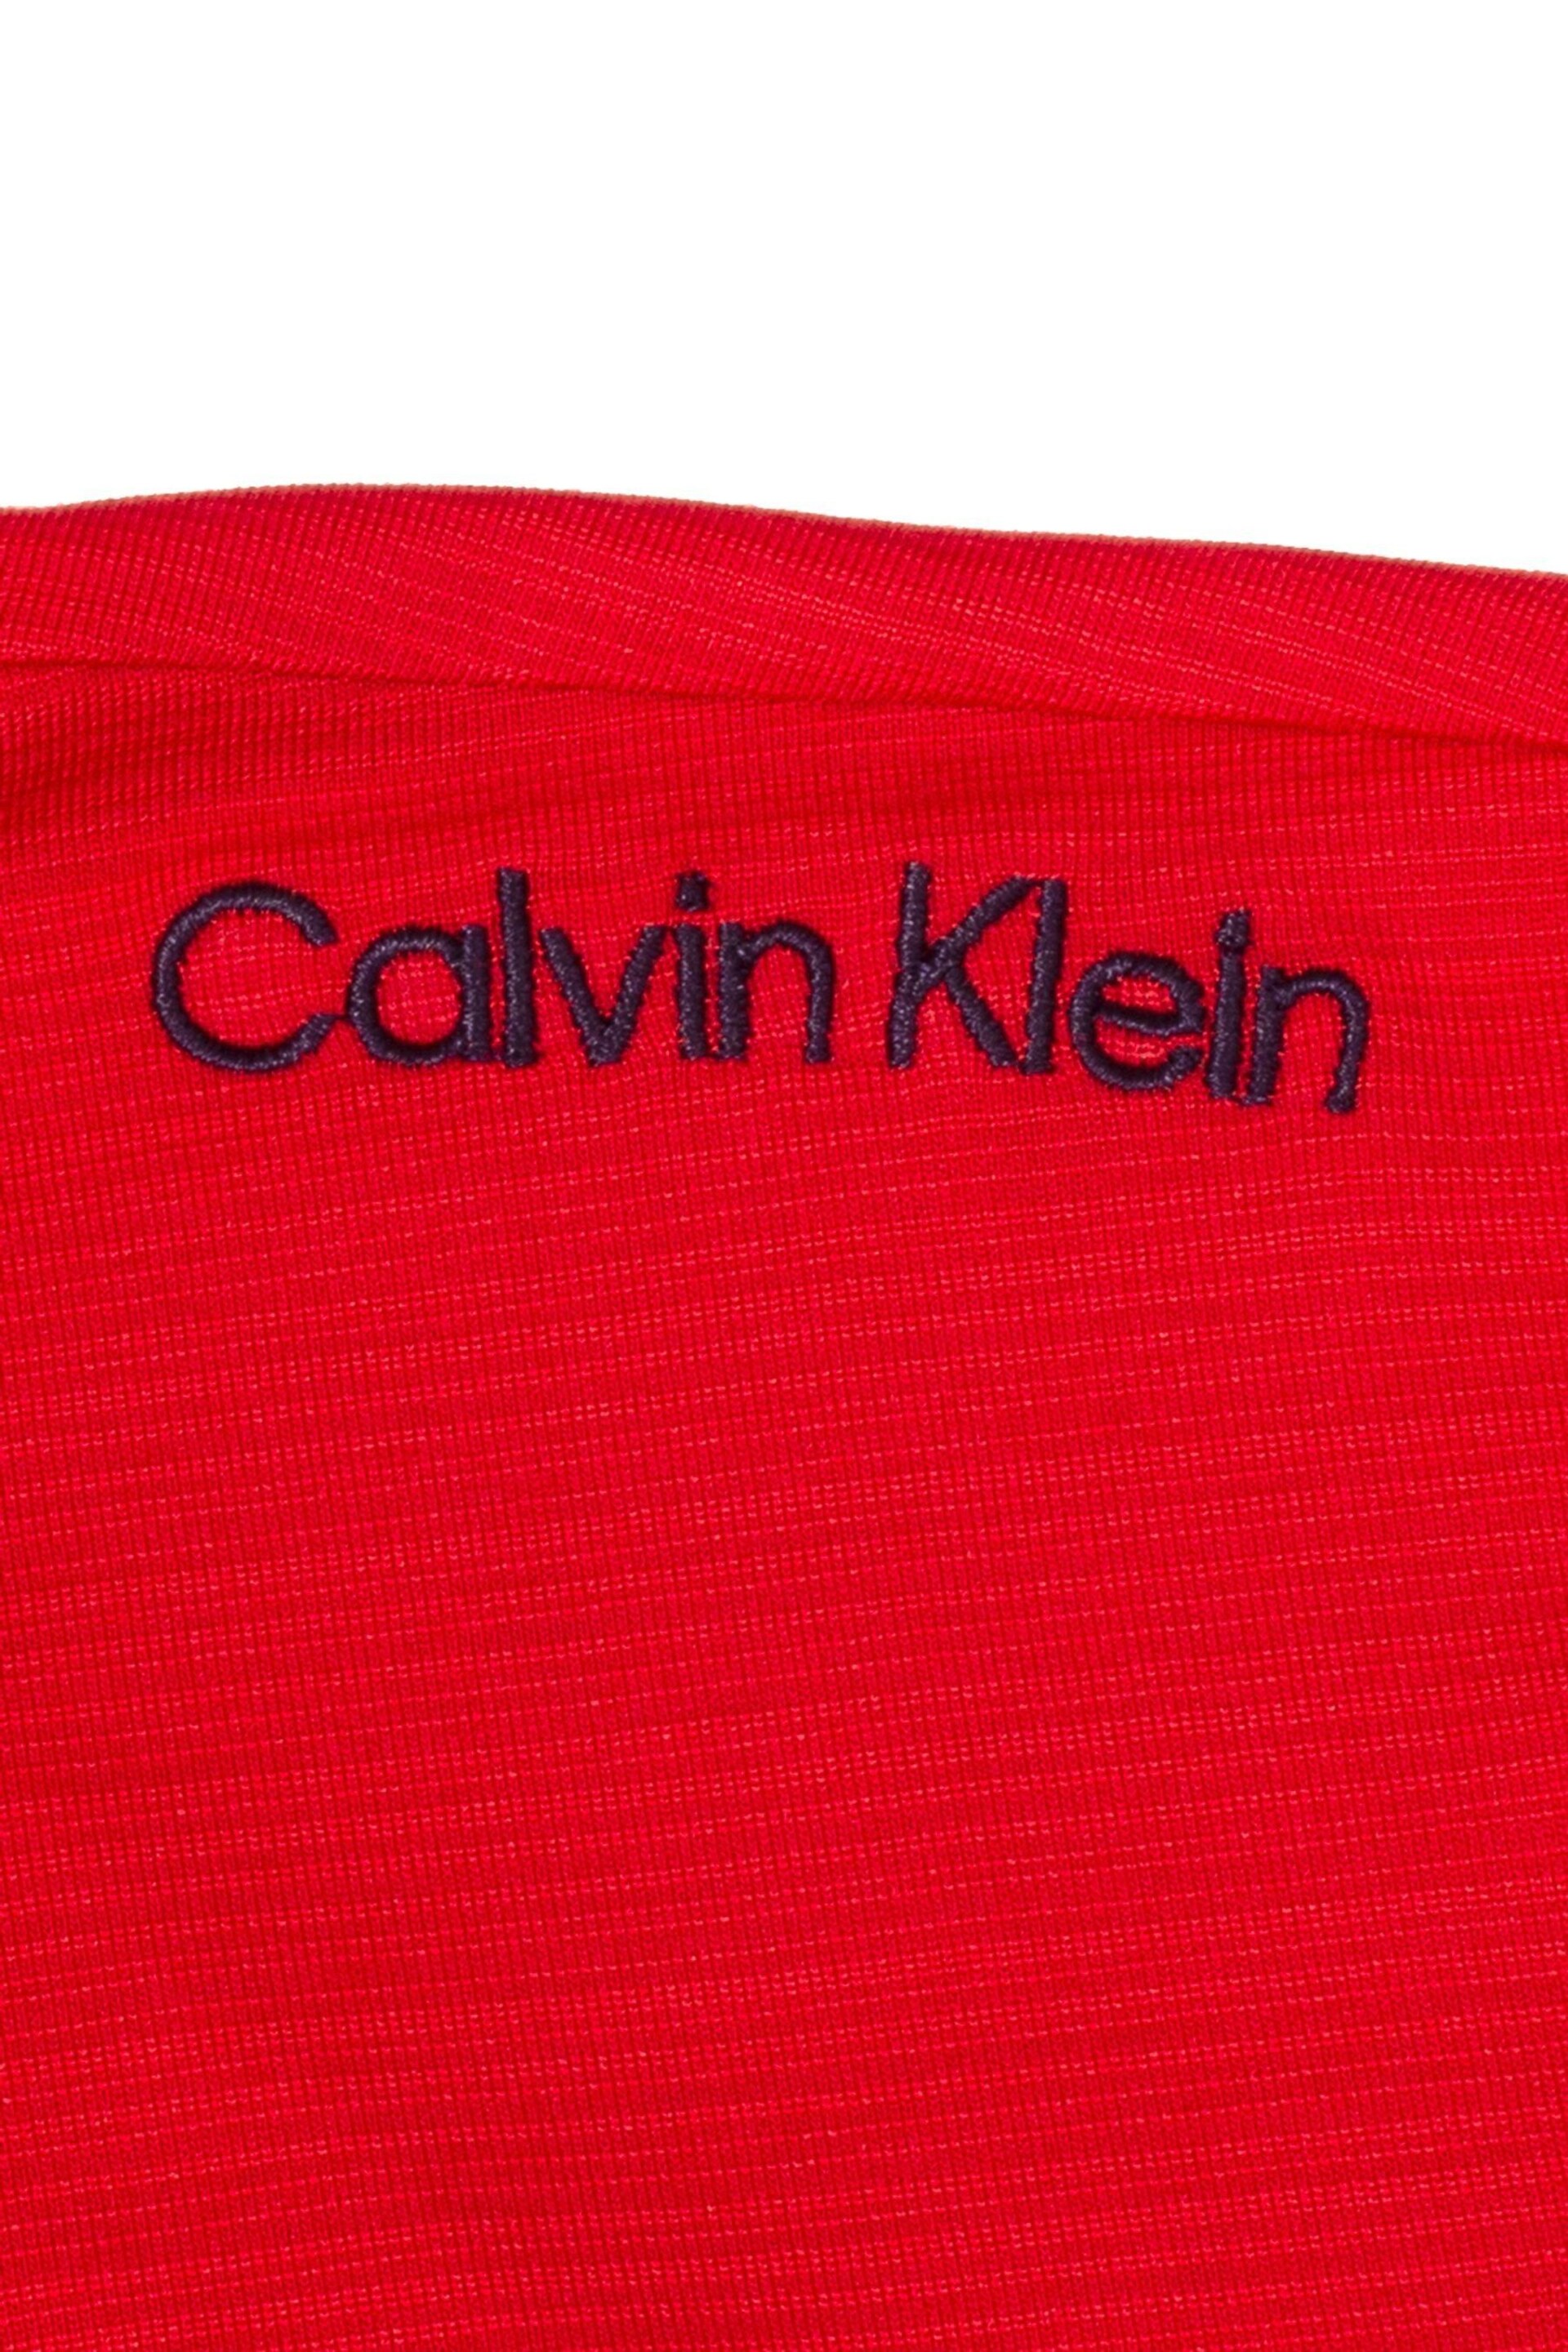 Calvin Klein Golf Navy Parramore Polo Shirt - Image 8 of 8